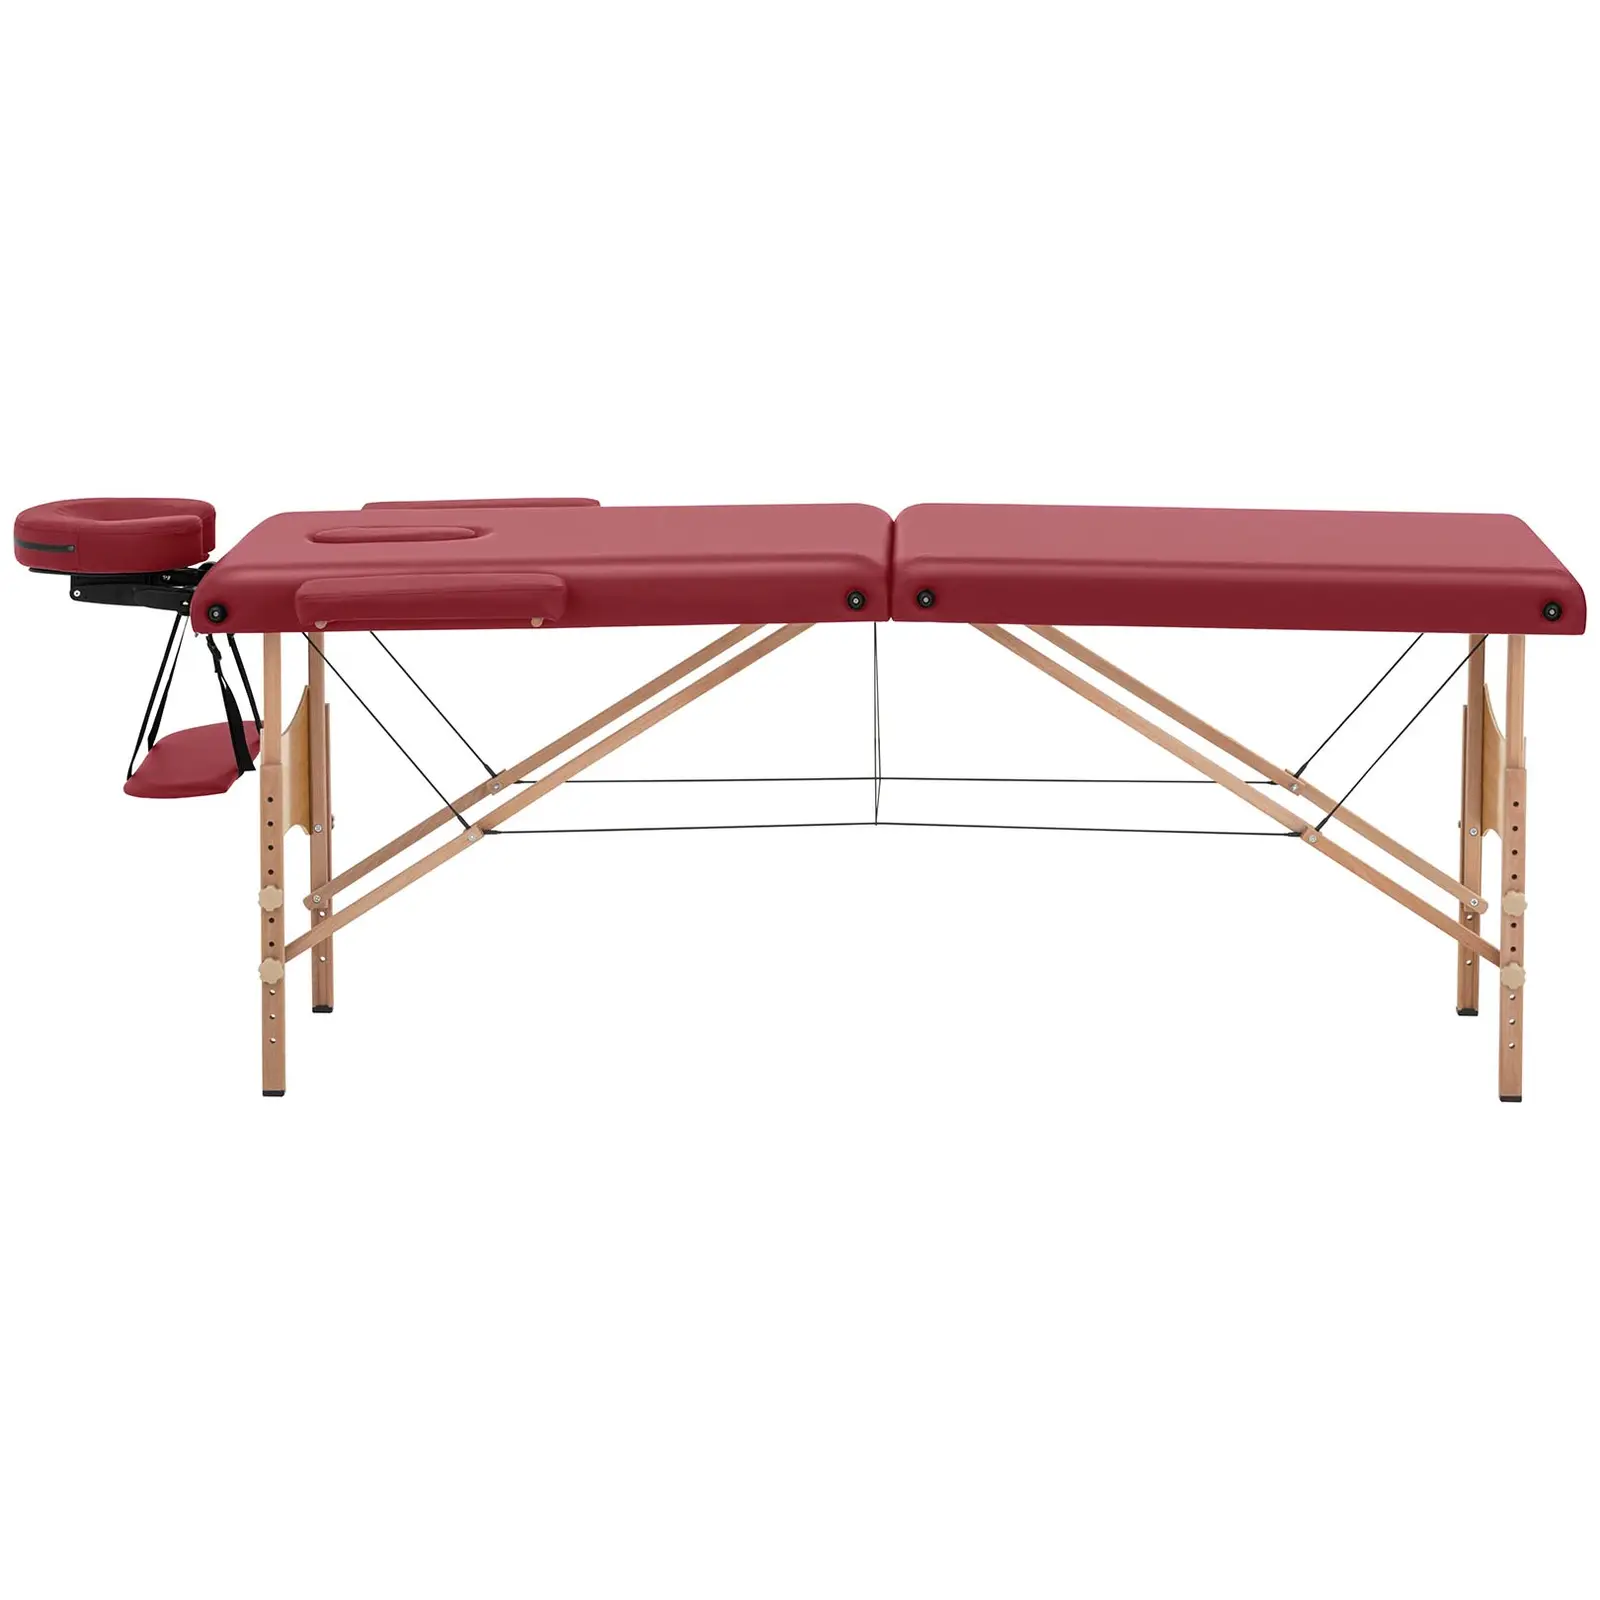 Składany stół do masażu - 185 x 60 x 63-86 cm - 227 kg - czerwony